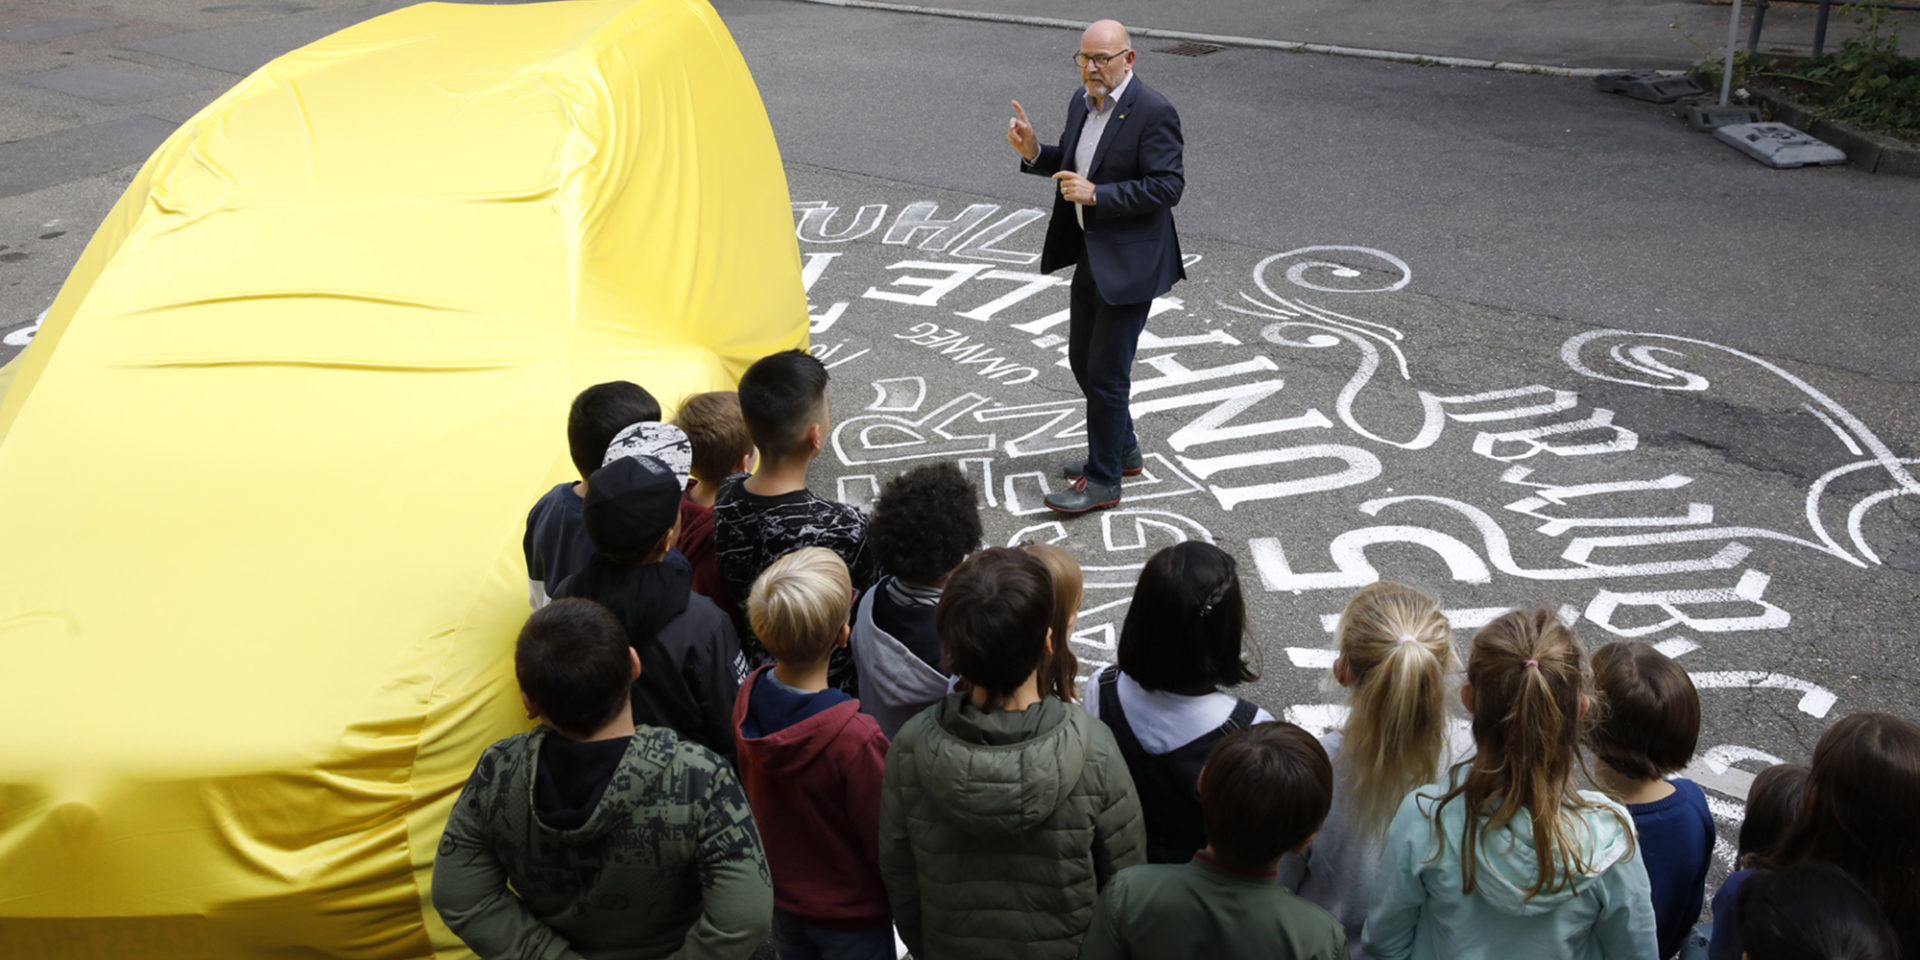 Eine Gruppe von Kindern steht auf einer mit Kreide bemalten Straße und hört einem Mann in Anzug zu - neben der Gruppe ist ein mit einem gelben Tuch verdecktes Auto zu sehen.